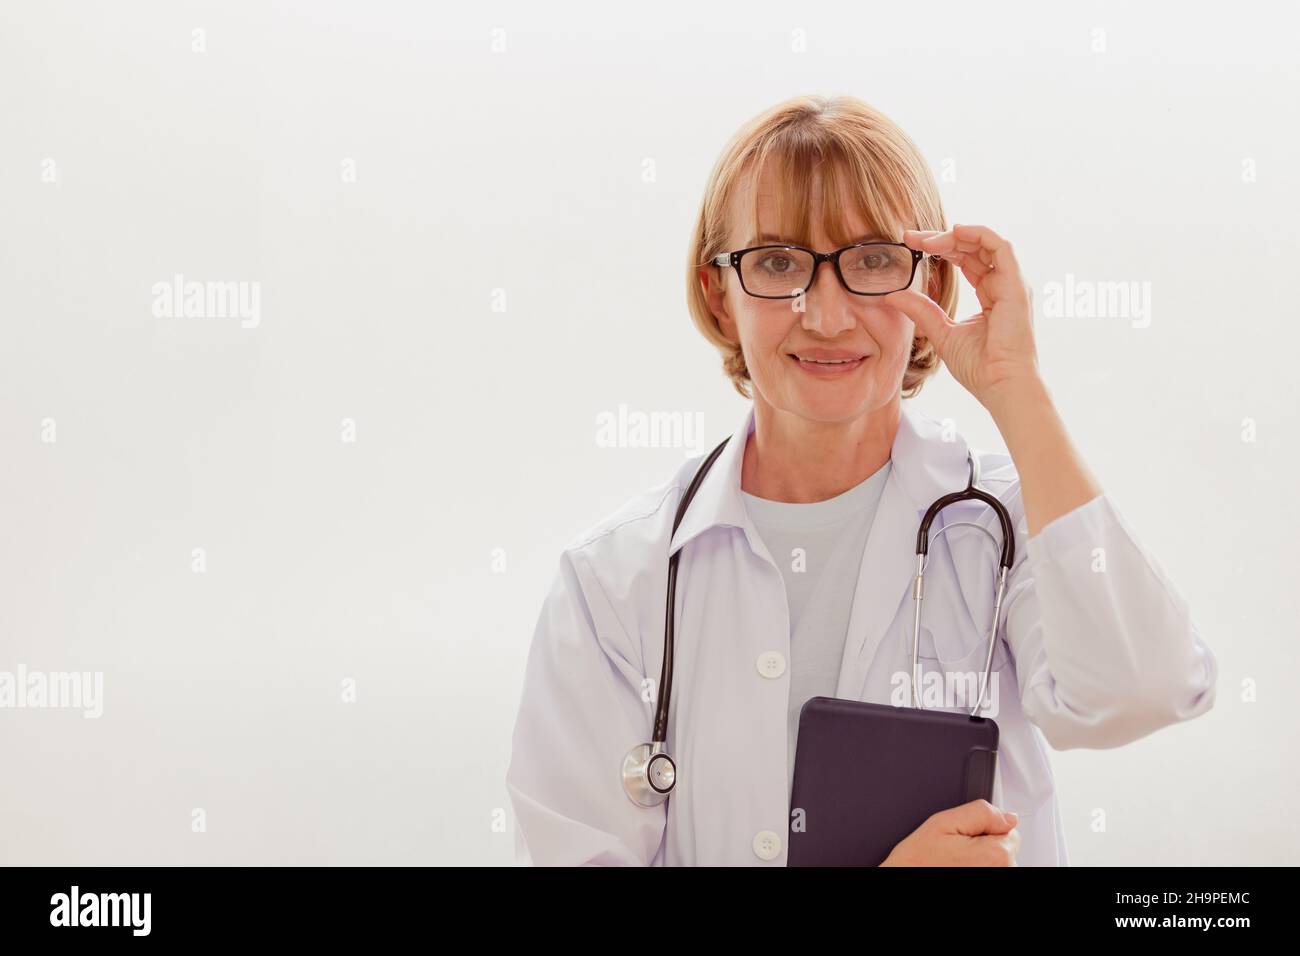 portrait professionnel femmes bon médecin spécialiste des soins de santé souriant debout avec de l'espace pour le texte Banque D'Images